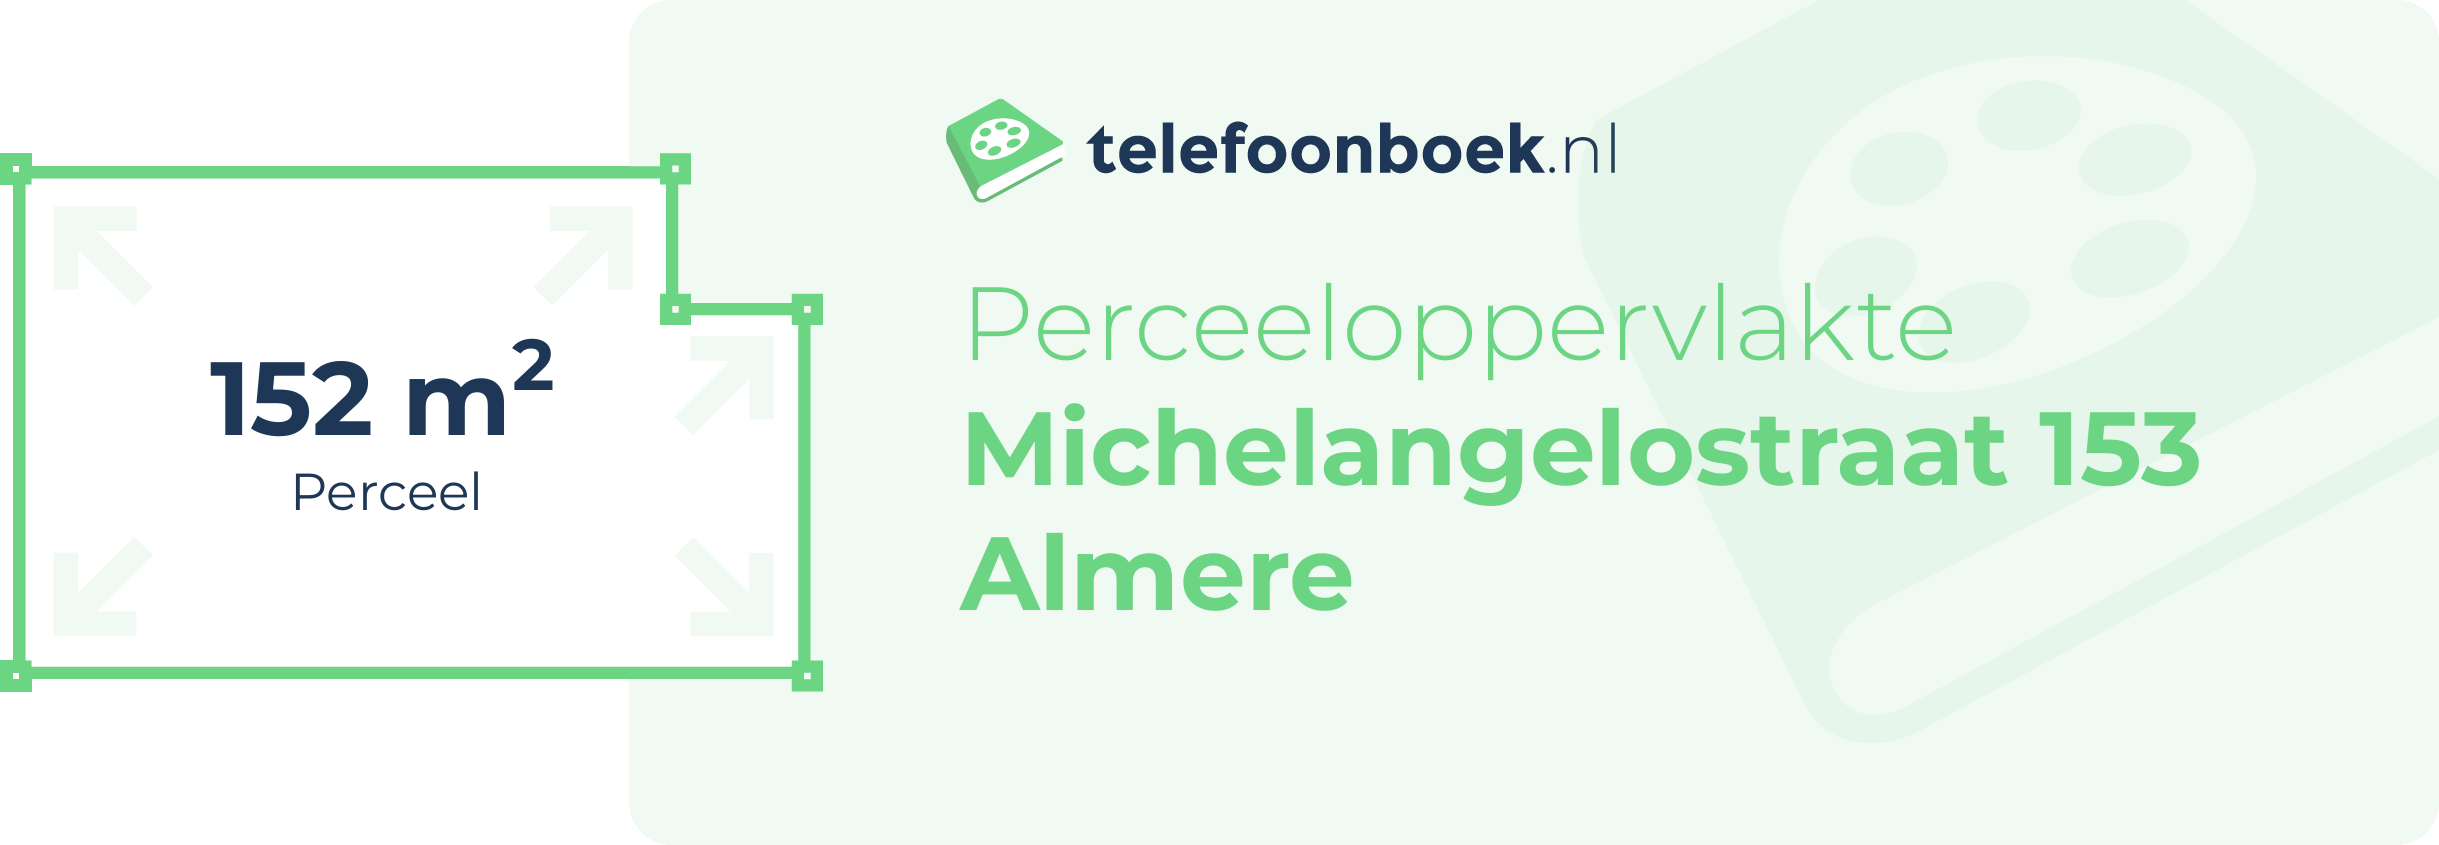 Perceeloppervlakte Michelangelostraat 153 Almere